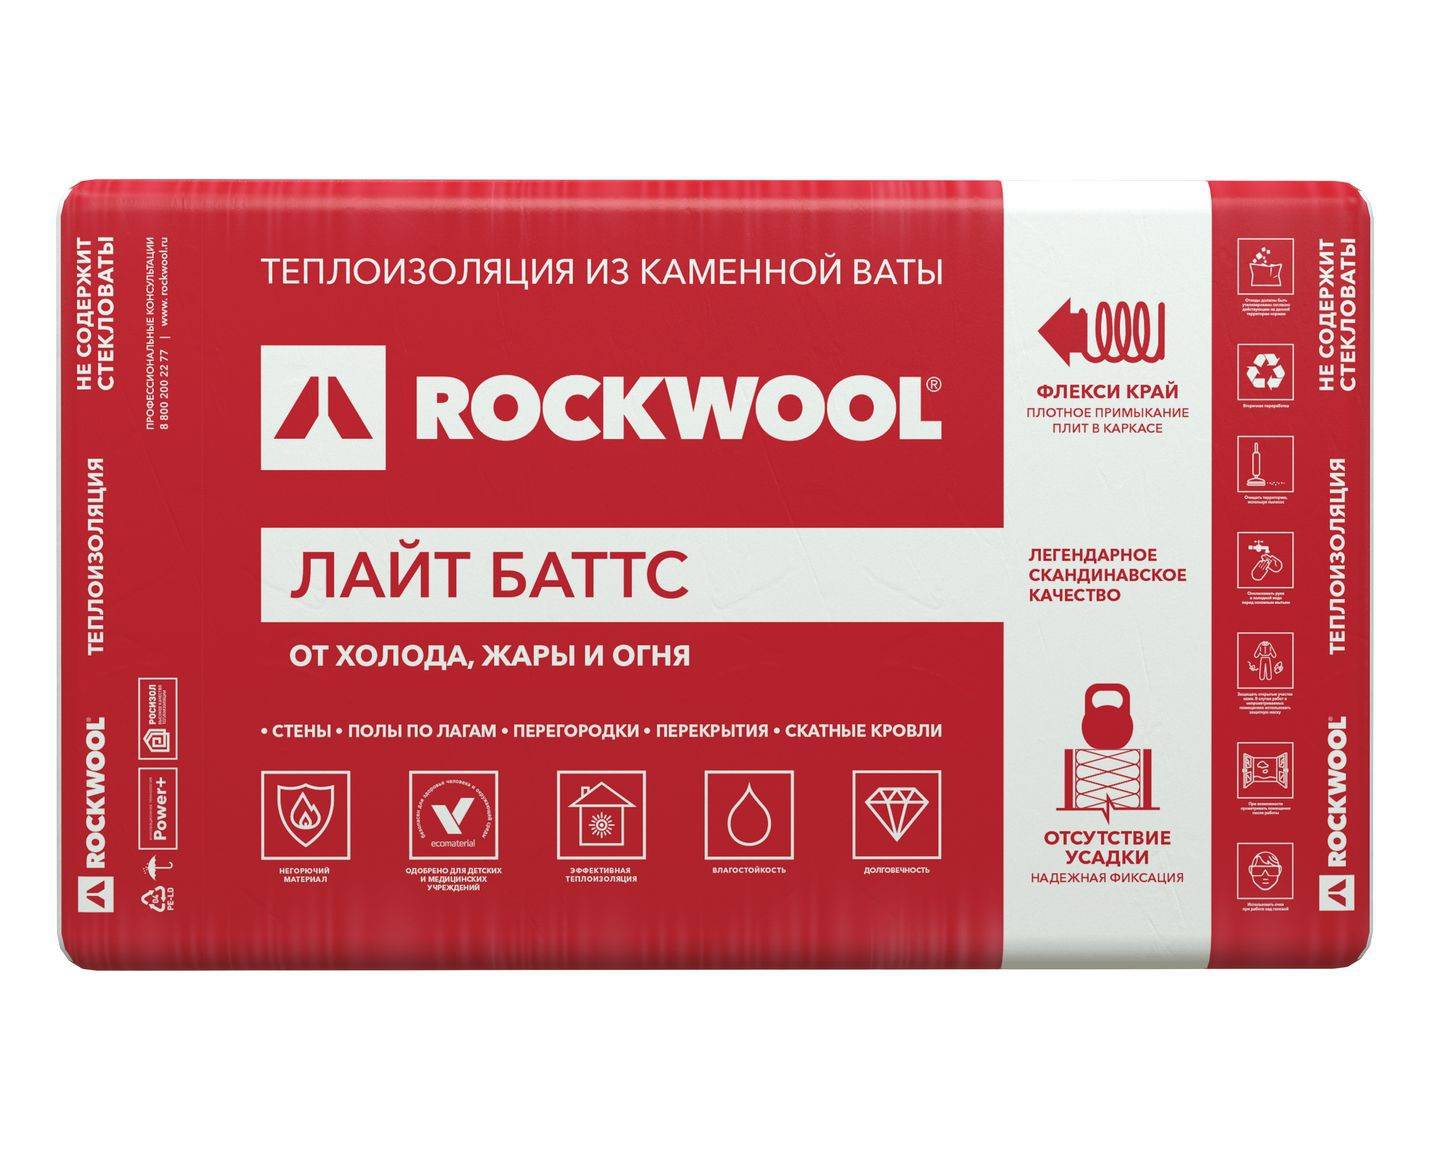 Rockwool акустик баттс: технические характеристики звукоизоляции, инструкция по монтажу, видео, фото